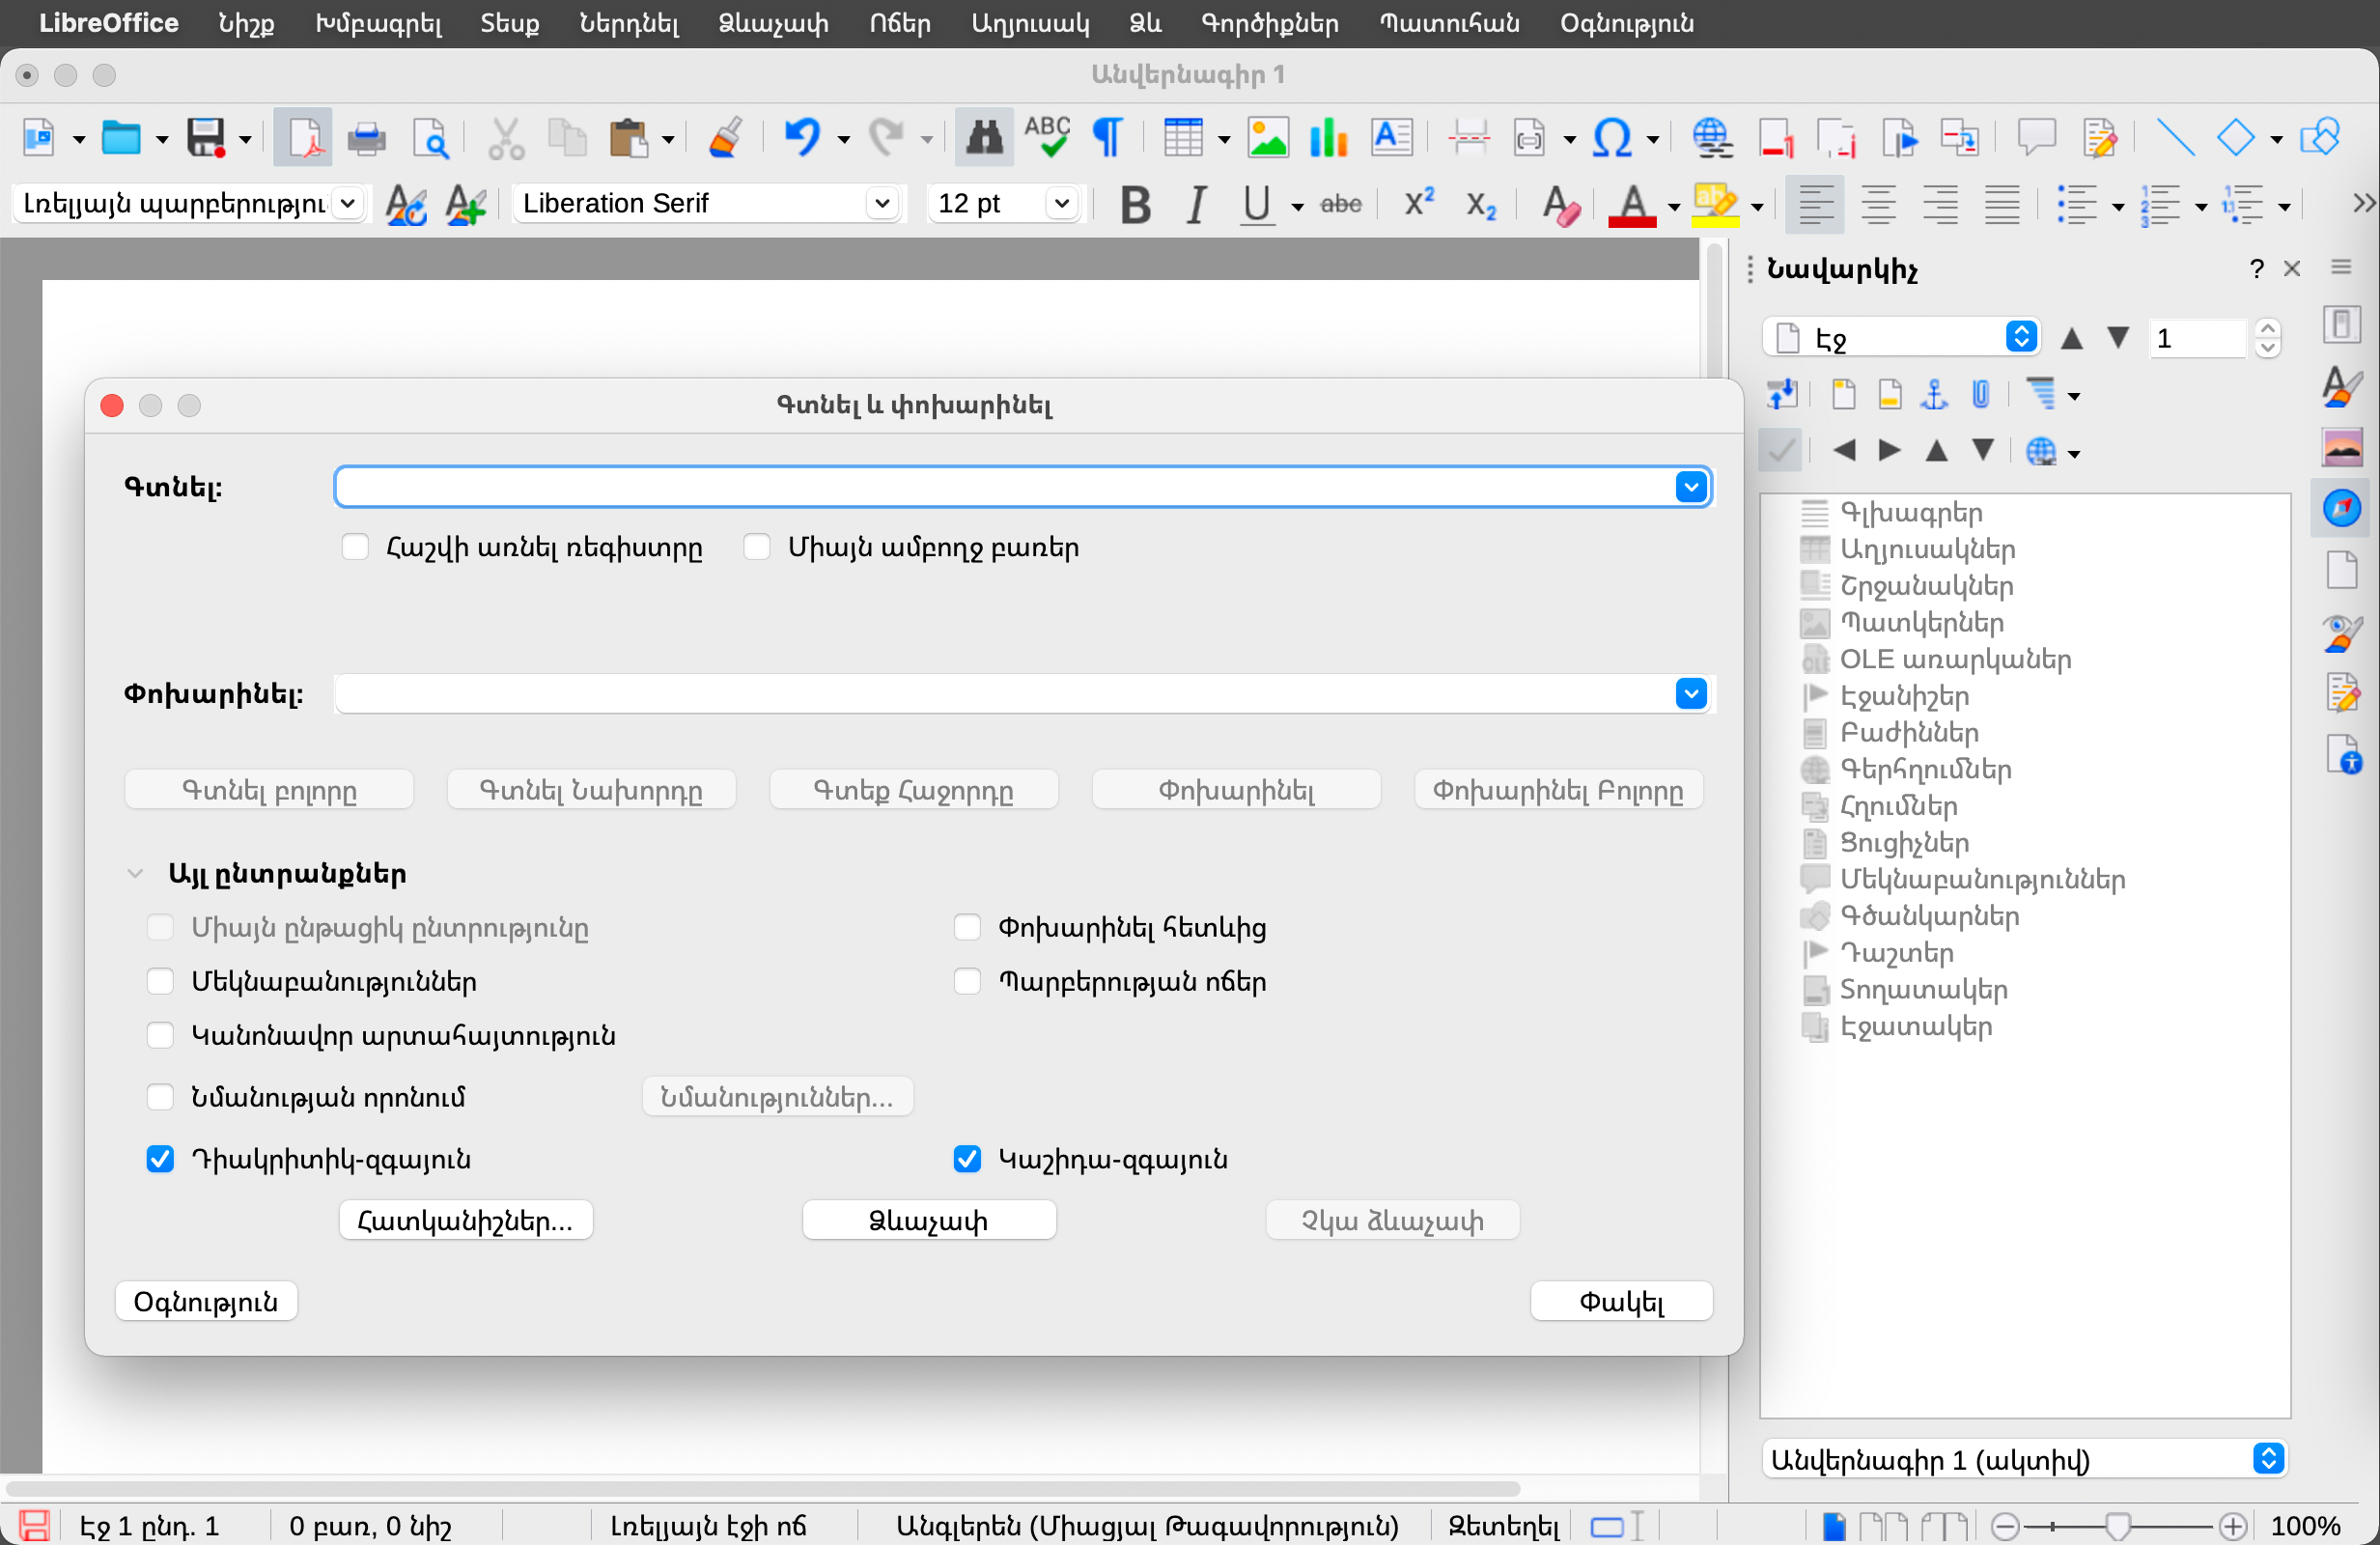 snímek obrazovky zobrazující uživatelské rozhraní LibreOffice v arménštině